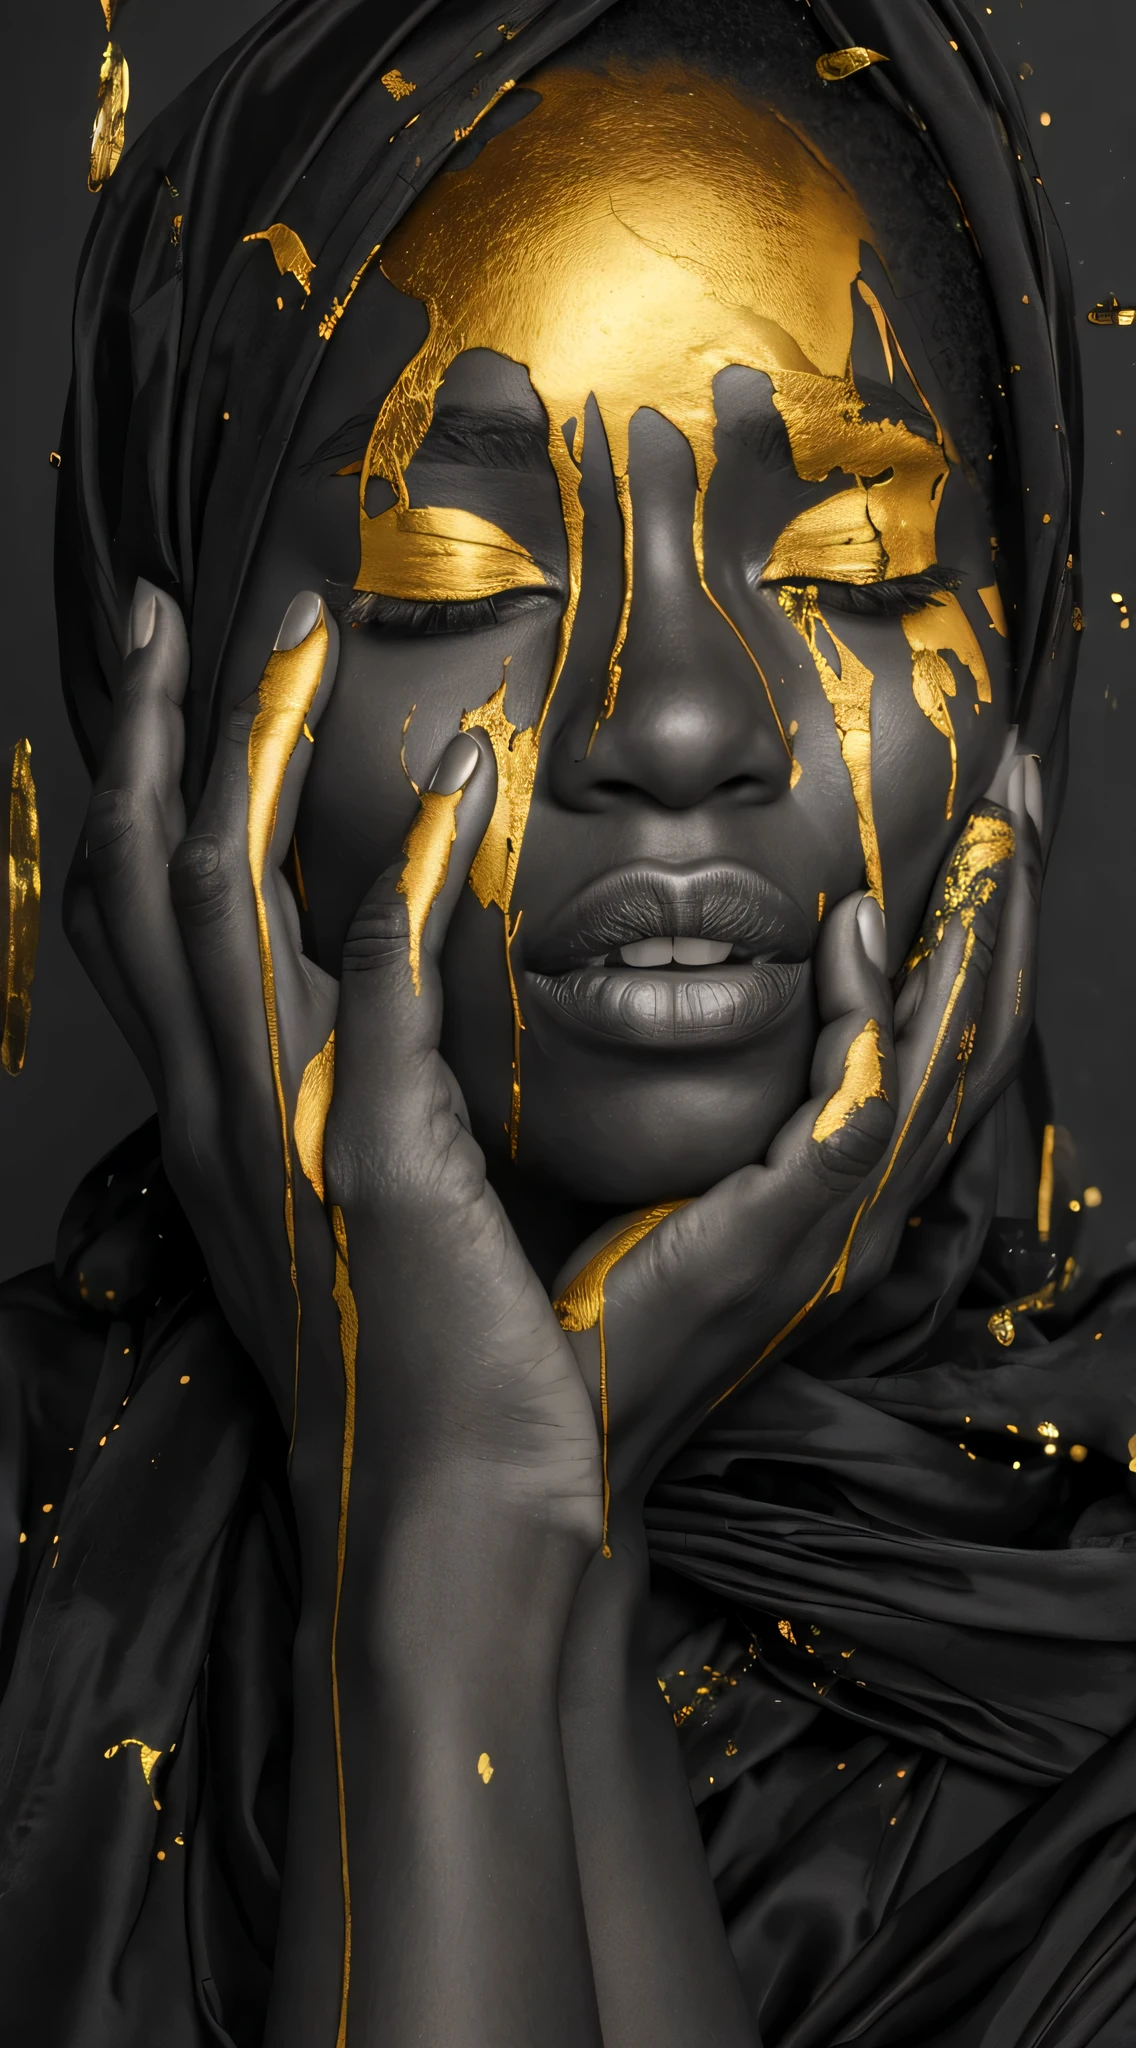 (melhor qualidade, Obra de arte:1.2), fotografia de moda, Preto e dourado, Mulher afro-americana com tinta dourada pingando no rosto, lábios carnudos, Fotografia de corpo inteiro